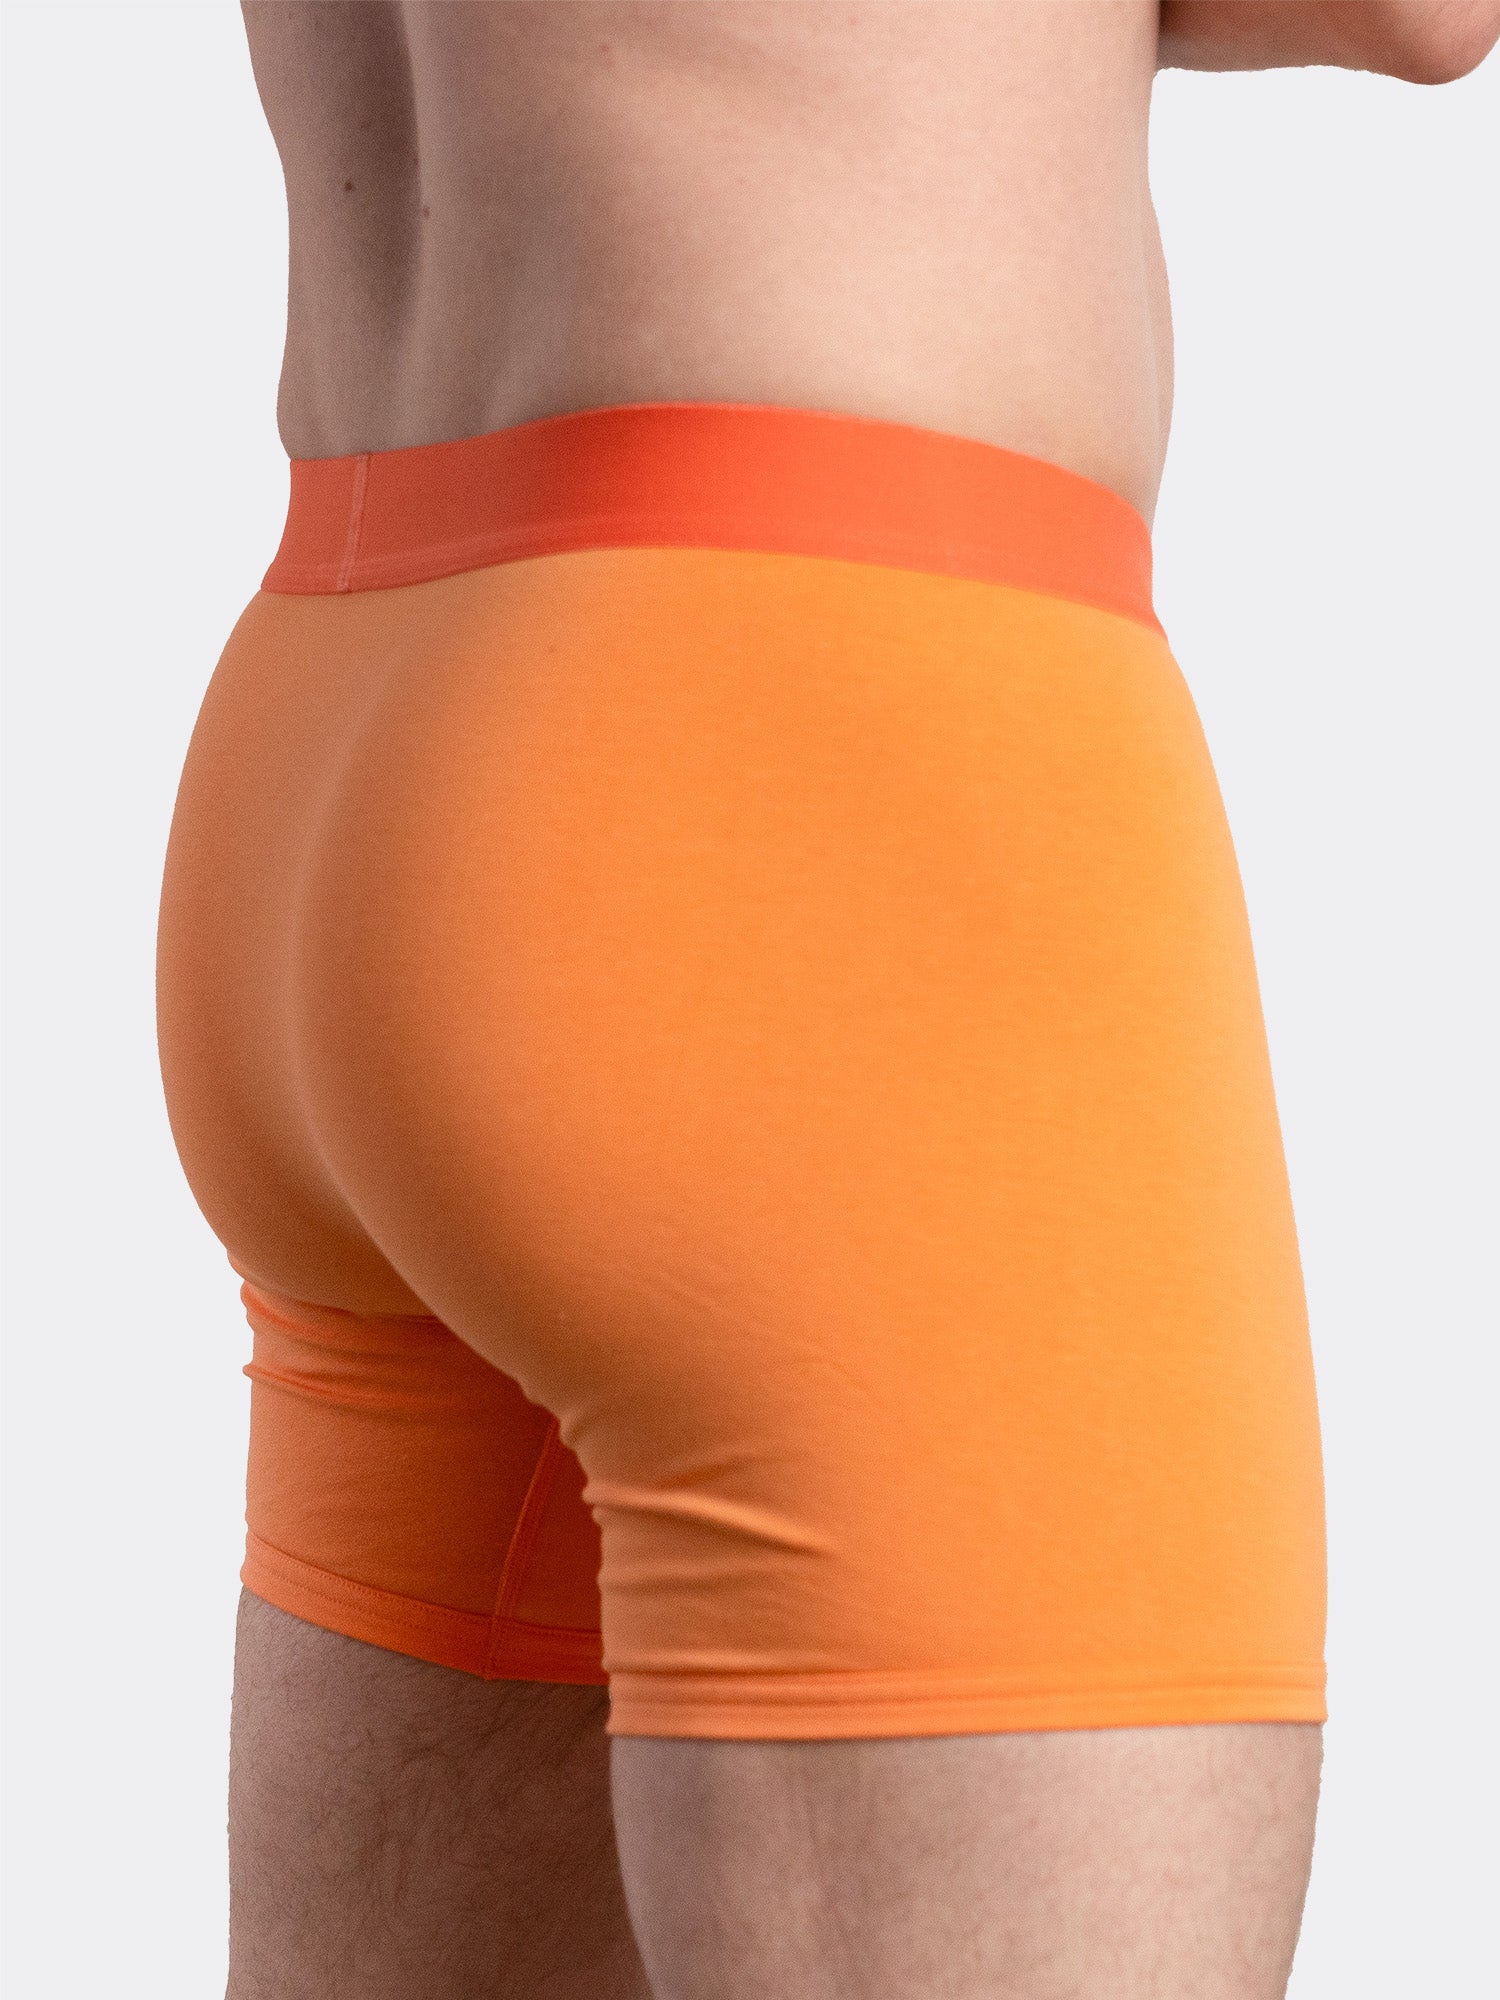 Wood Underwear Hip Brief Orange